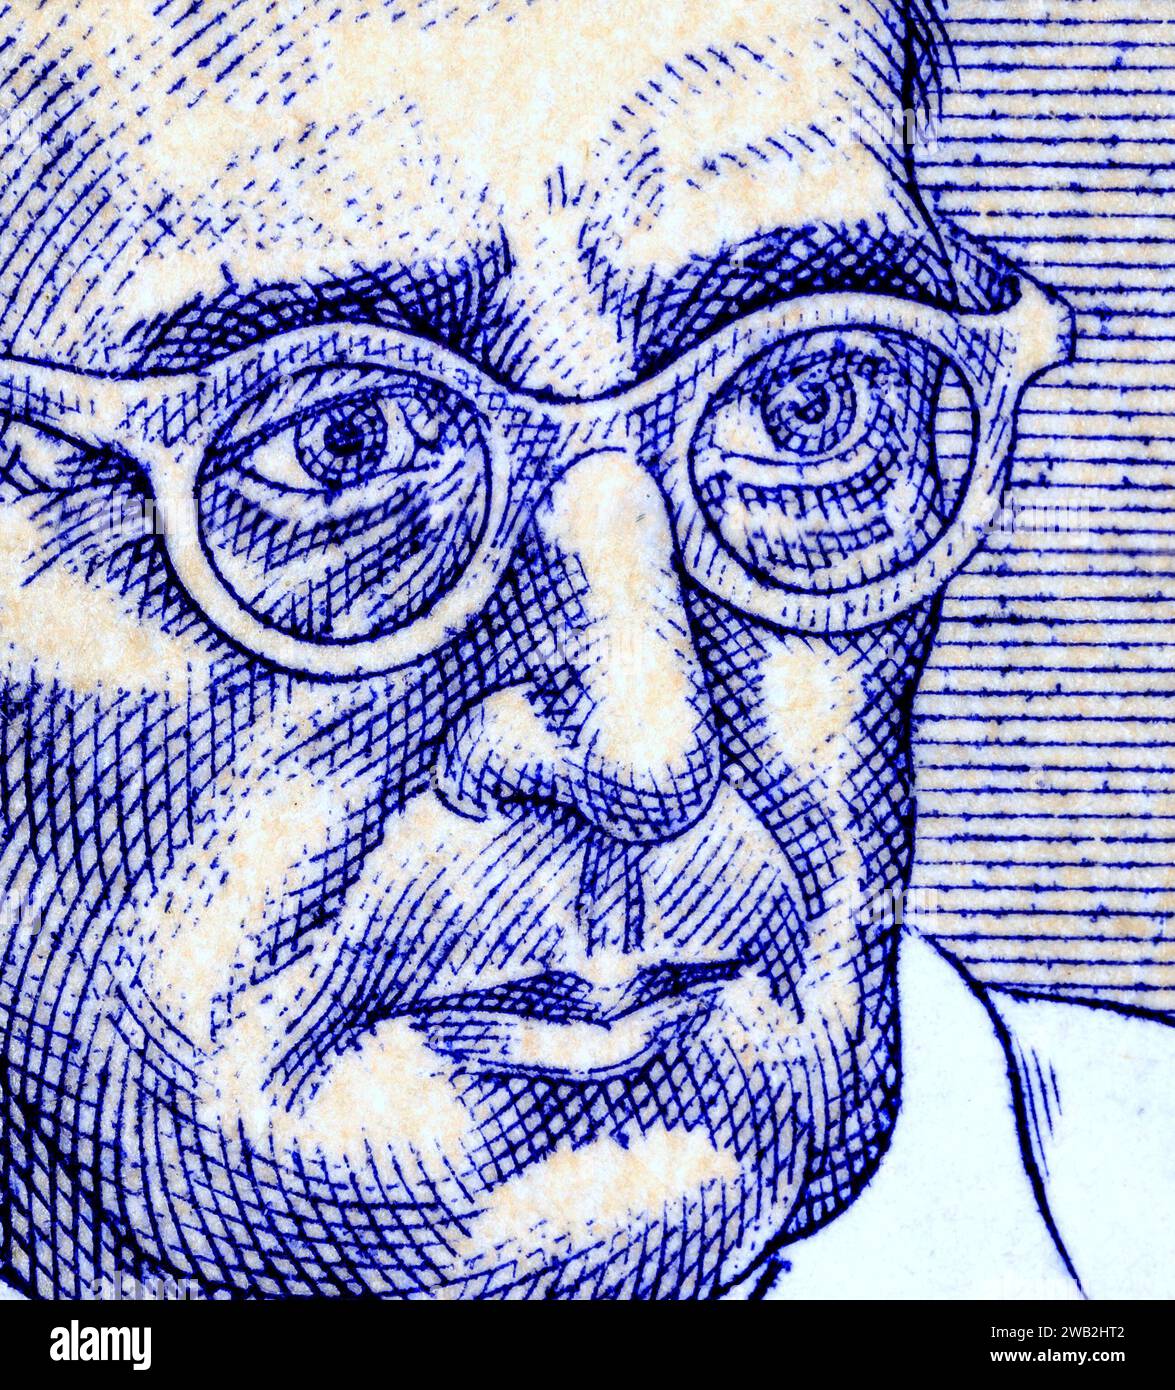 Ritratto di Eduard Čech (1893-1960) matematico ceco - dettaglio da un francobollo della Repubblica Ceca / Cechia (1993) Foto Stock